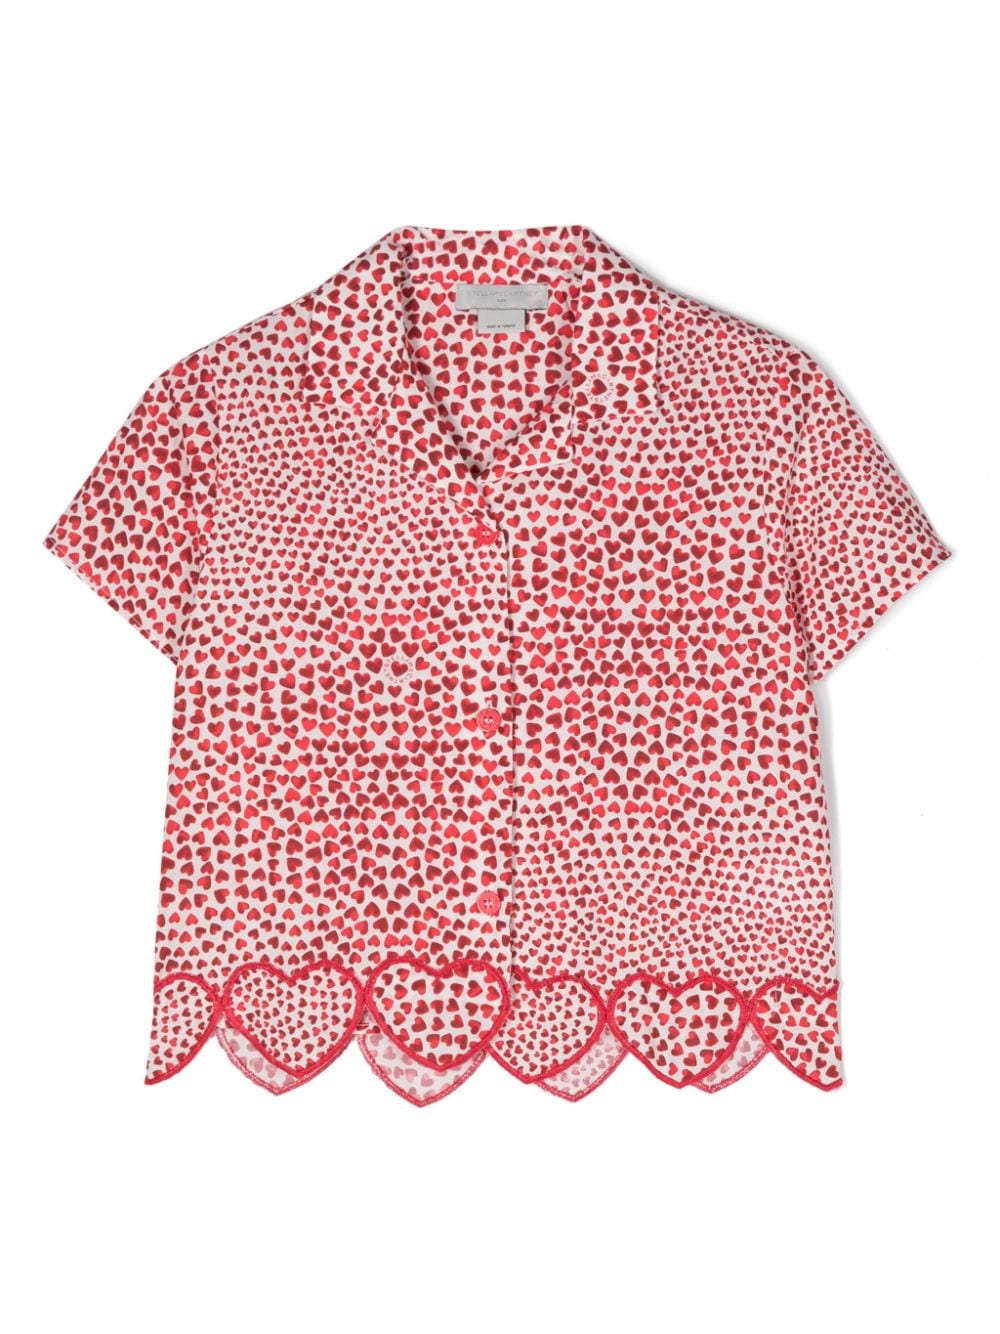 Camicia rossa per bambina con stampa a cuori